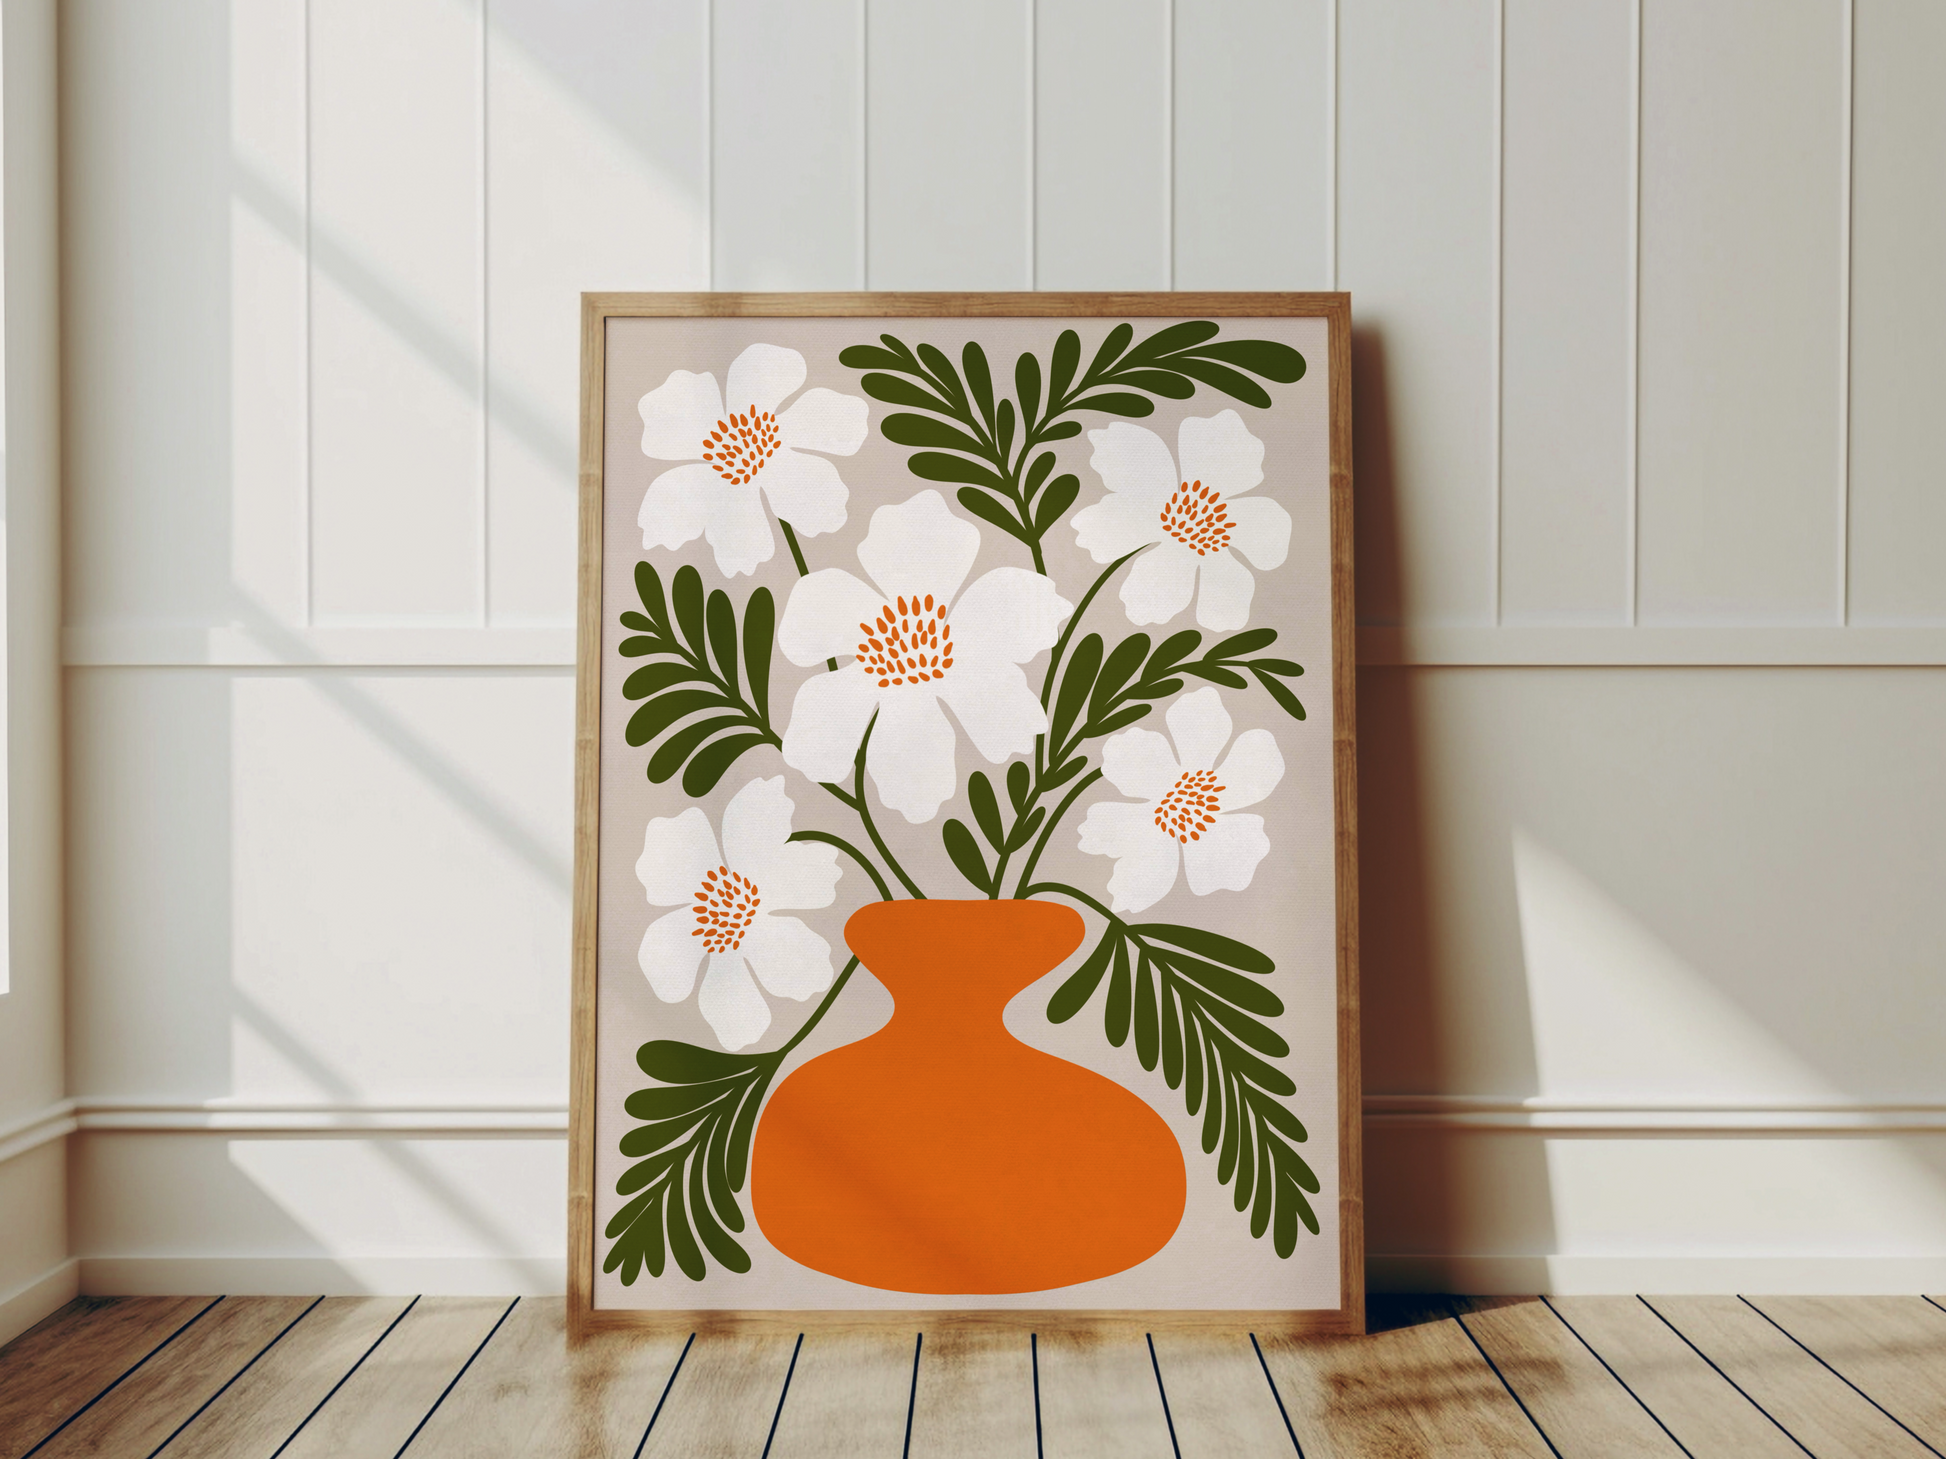 Vita blommor med gröna yviga blad, vas i knallig orange och matchande fröställning. Posters - inspiration